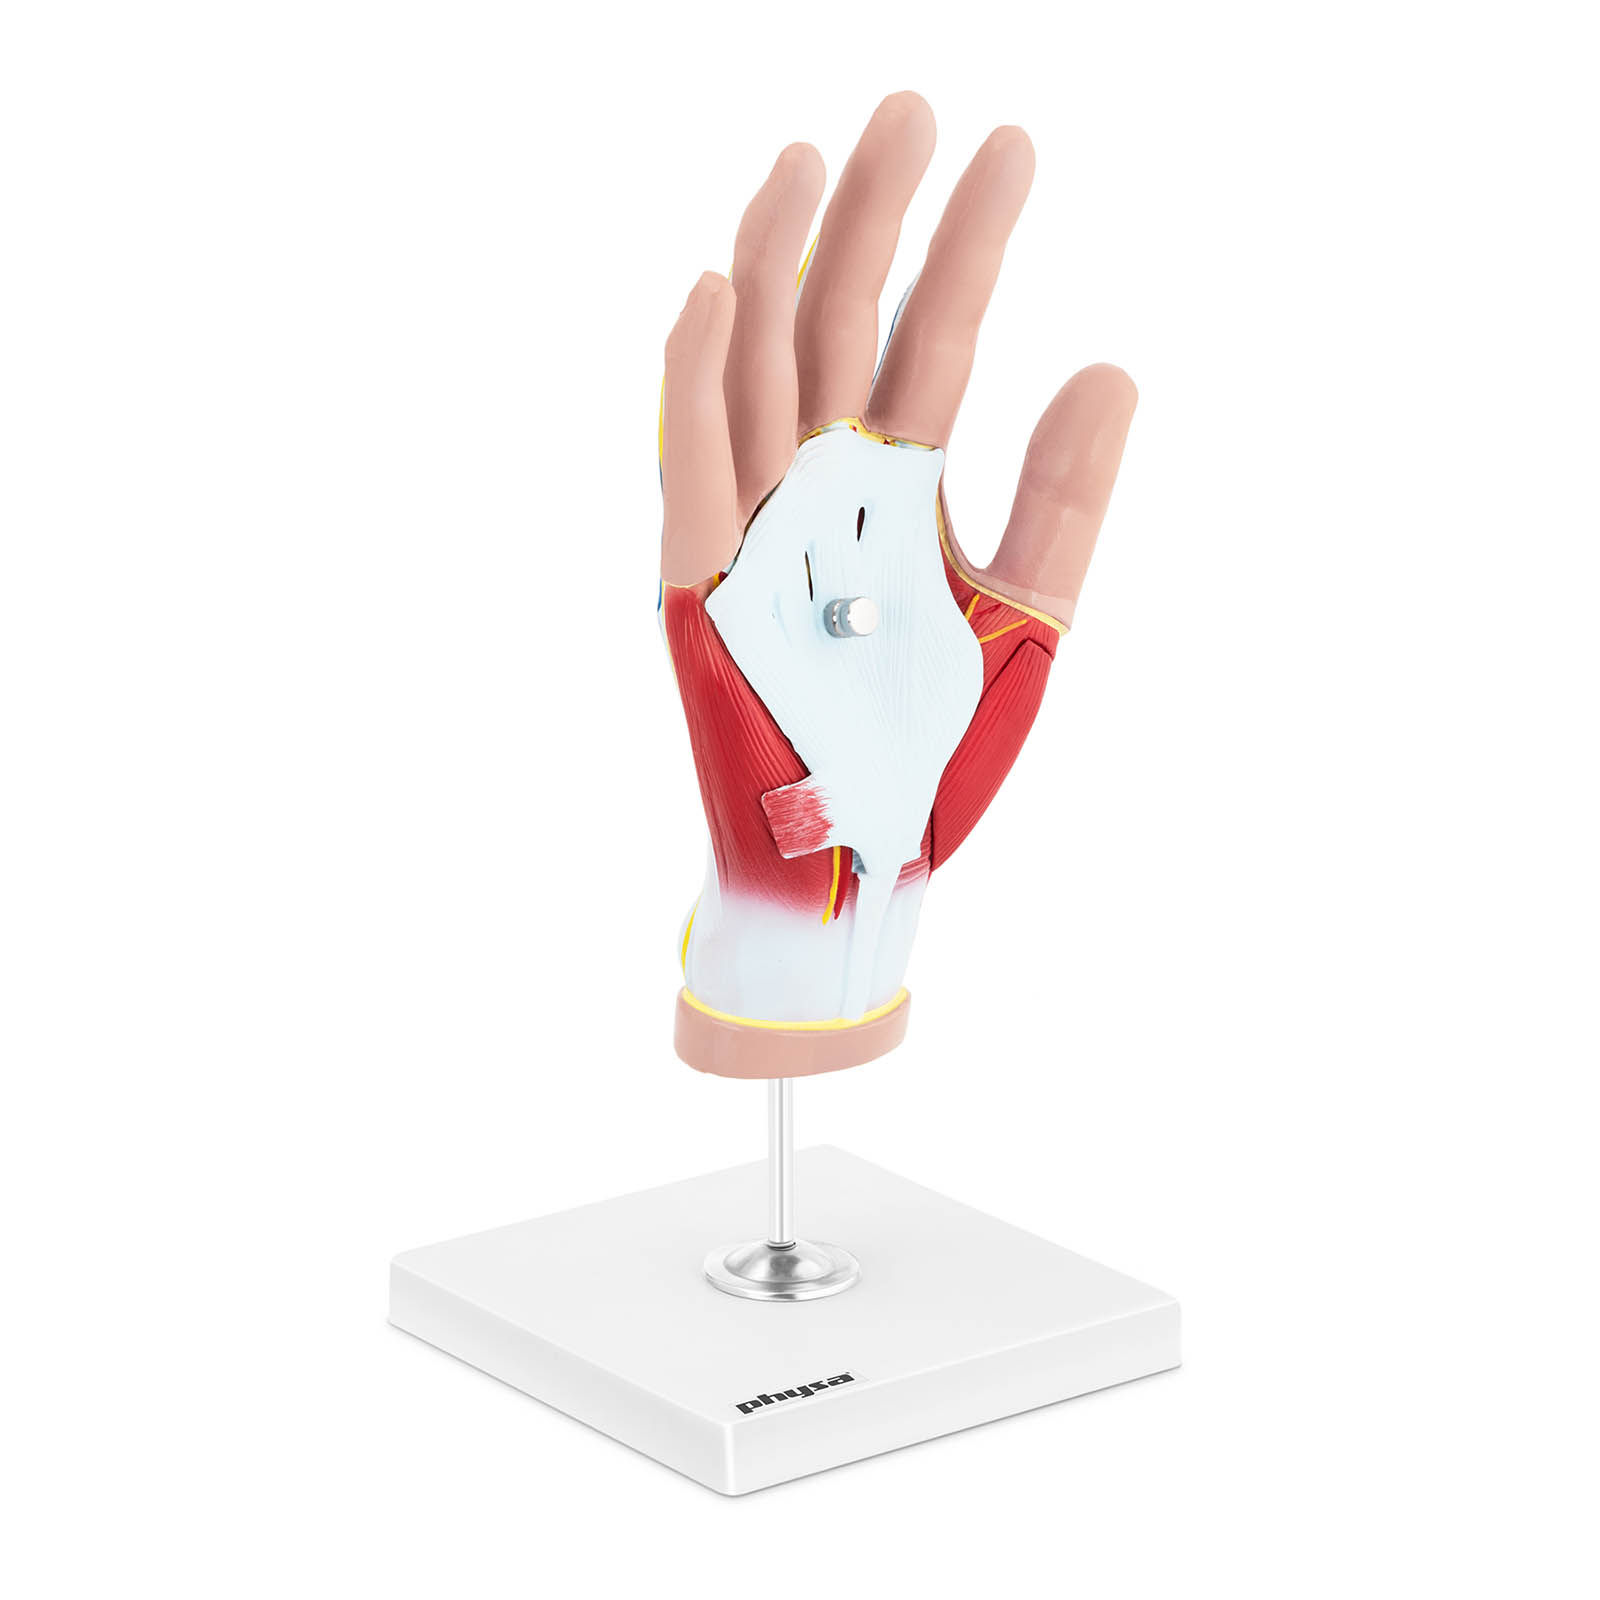 Maquette anatomique de la main humaine avec dégénérescence musculaire - En 4 parties - Grandeur nature